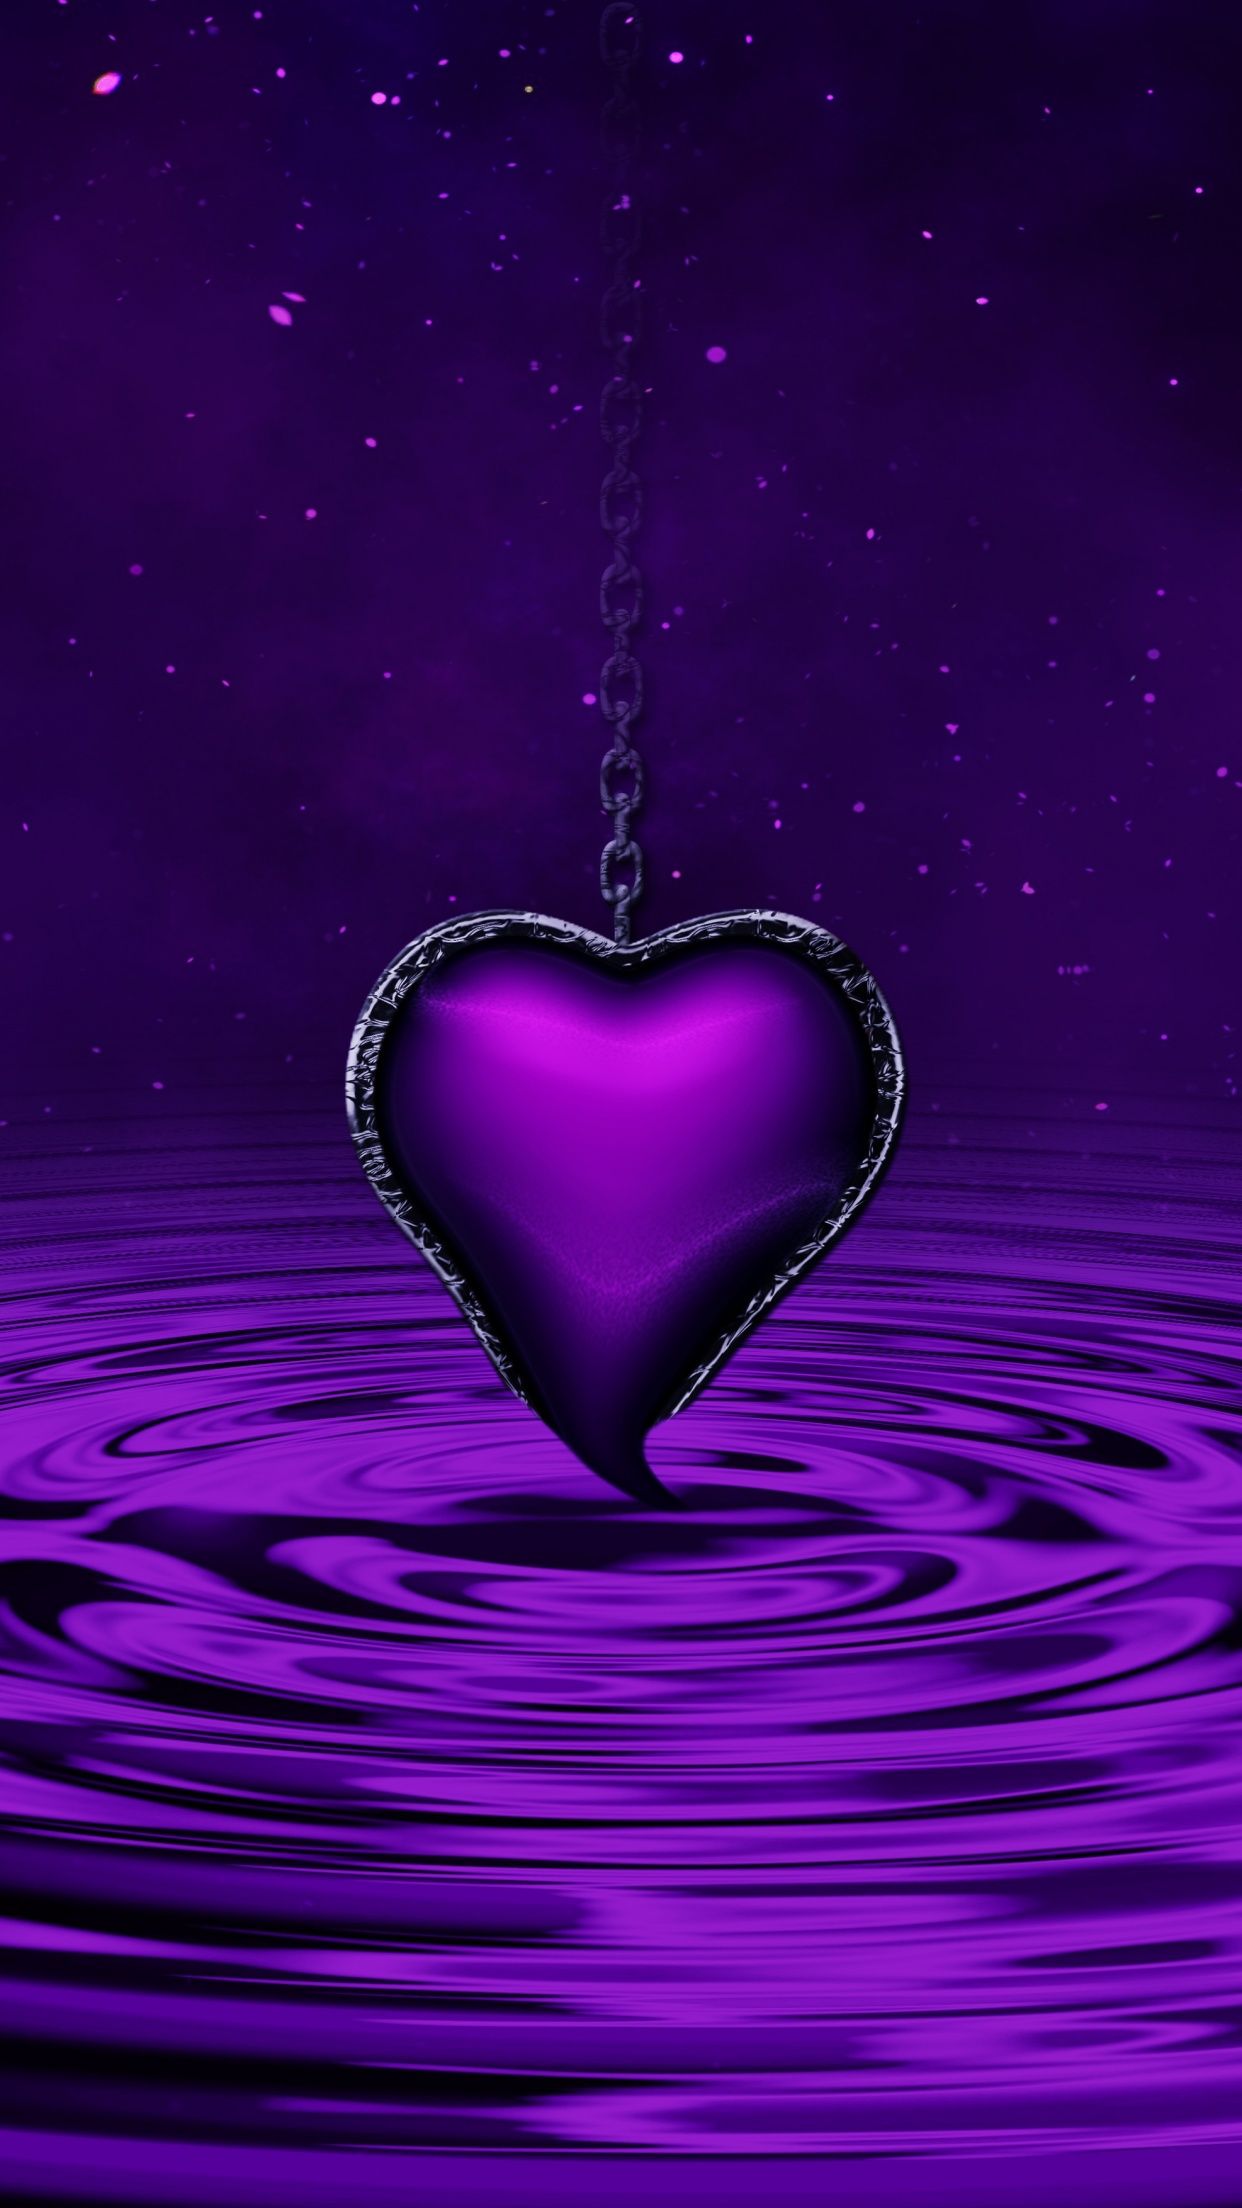 A purple heart on a purple background - Heart